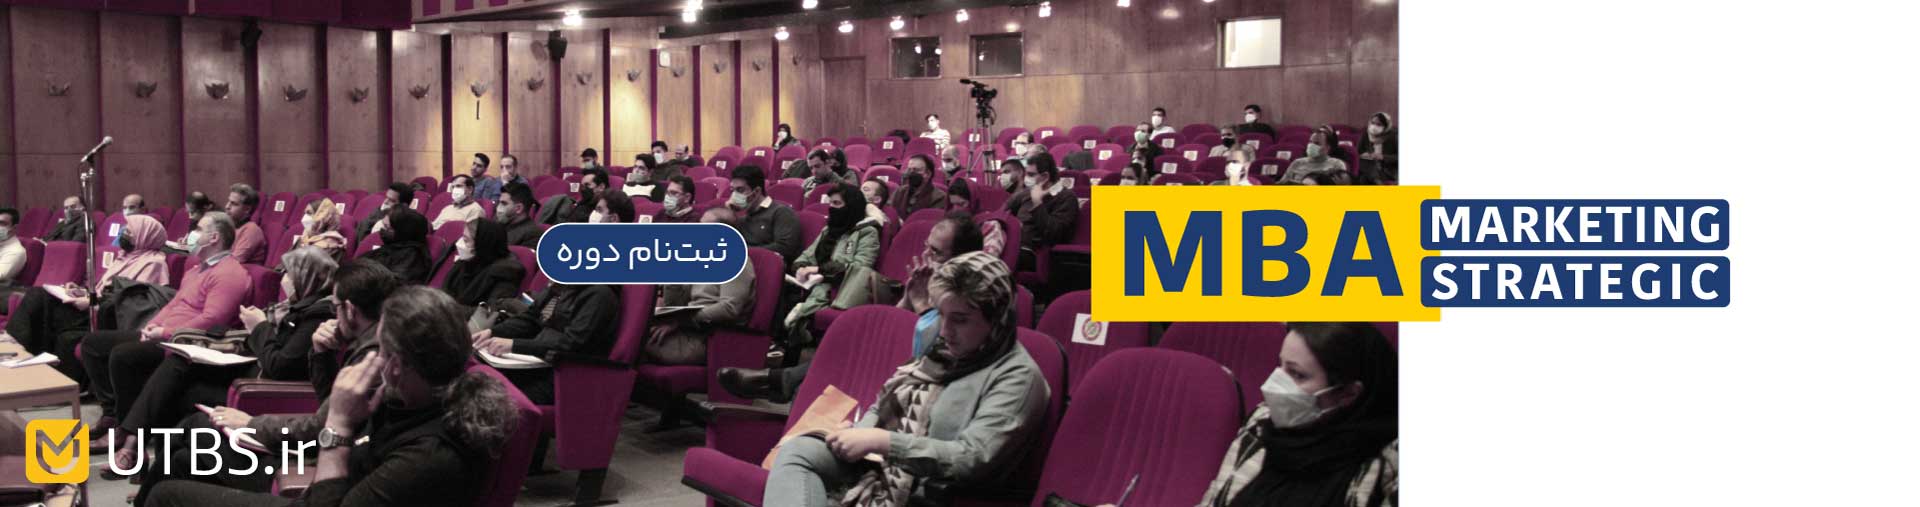 ثبت نام دوره MBA دانشگاه تهران